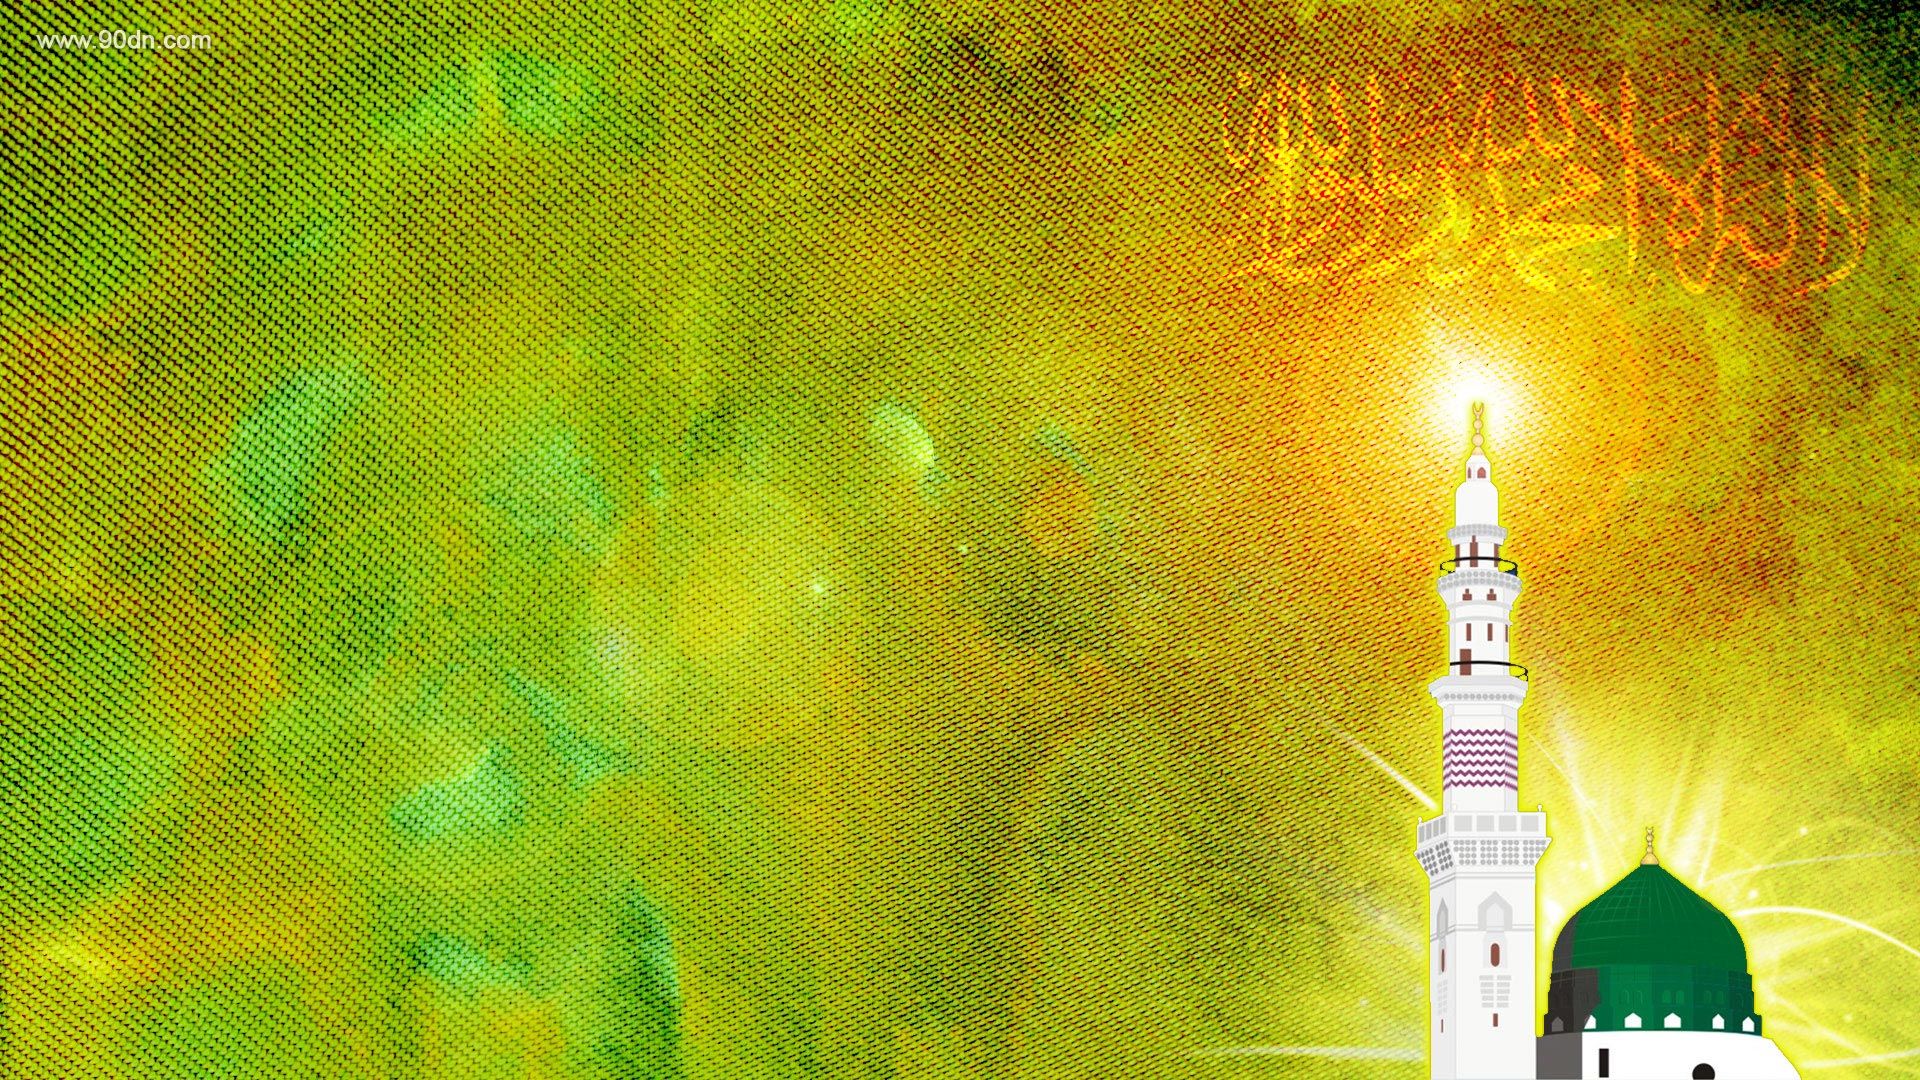 تصویر زمینه آرامش بخش مذهبی با طرح مسجد النبی